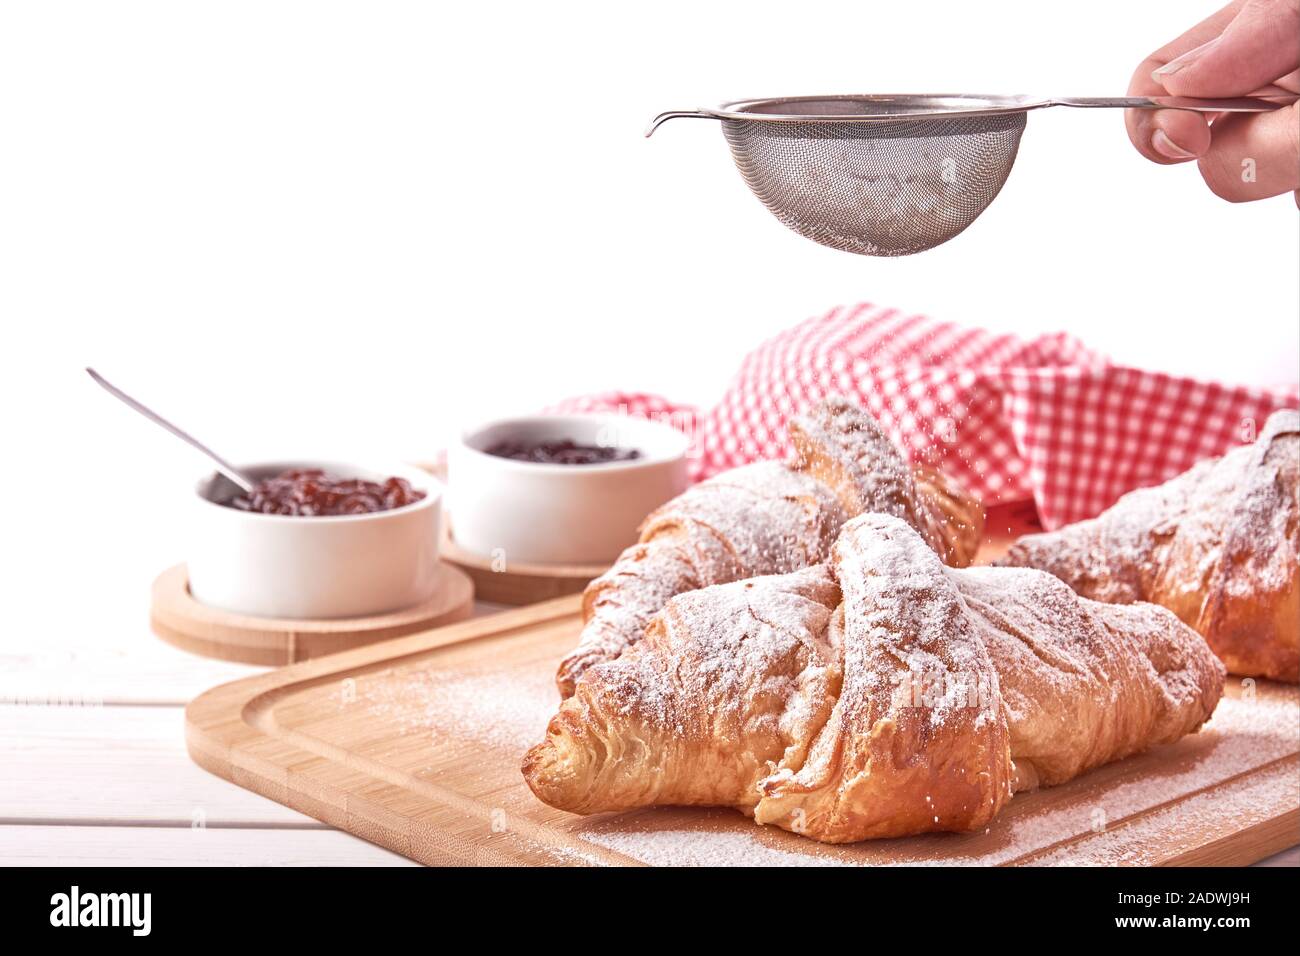 Stillleben mit Croissant und Schalen mit Marmelade. Weibliche hand mit einem Sieb und streut Zucker. Auf weissem Hintergrund. Stockfoto